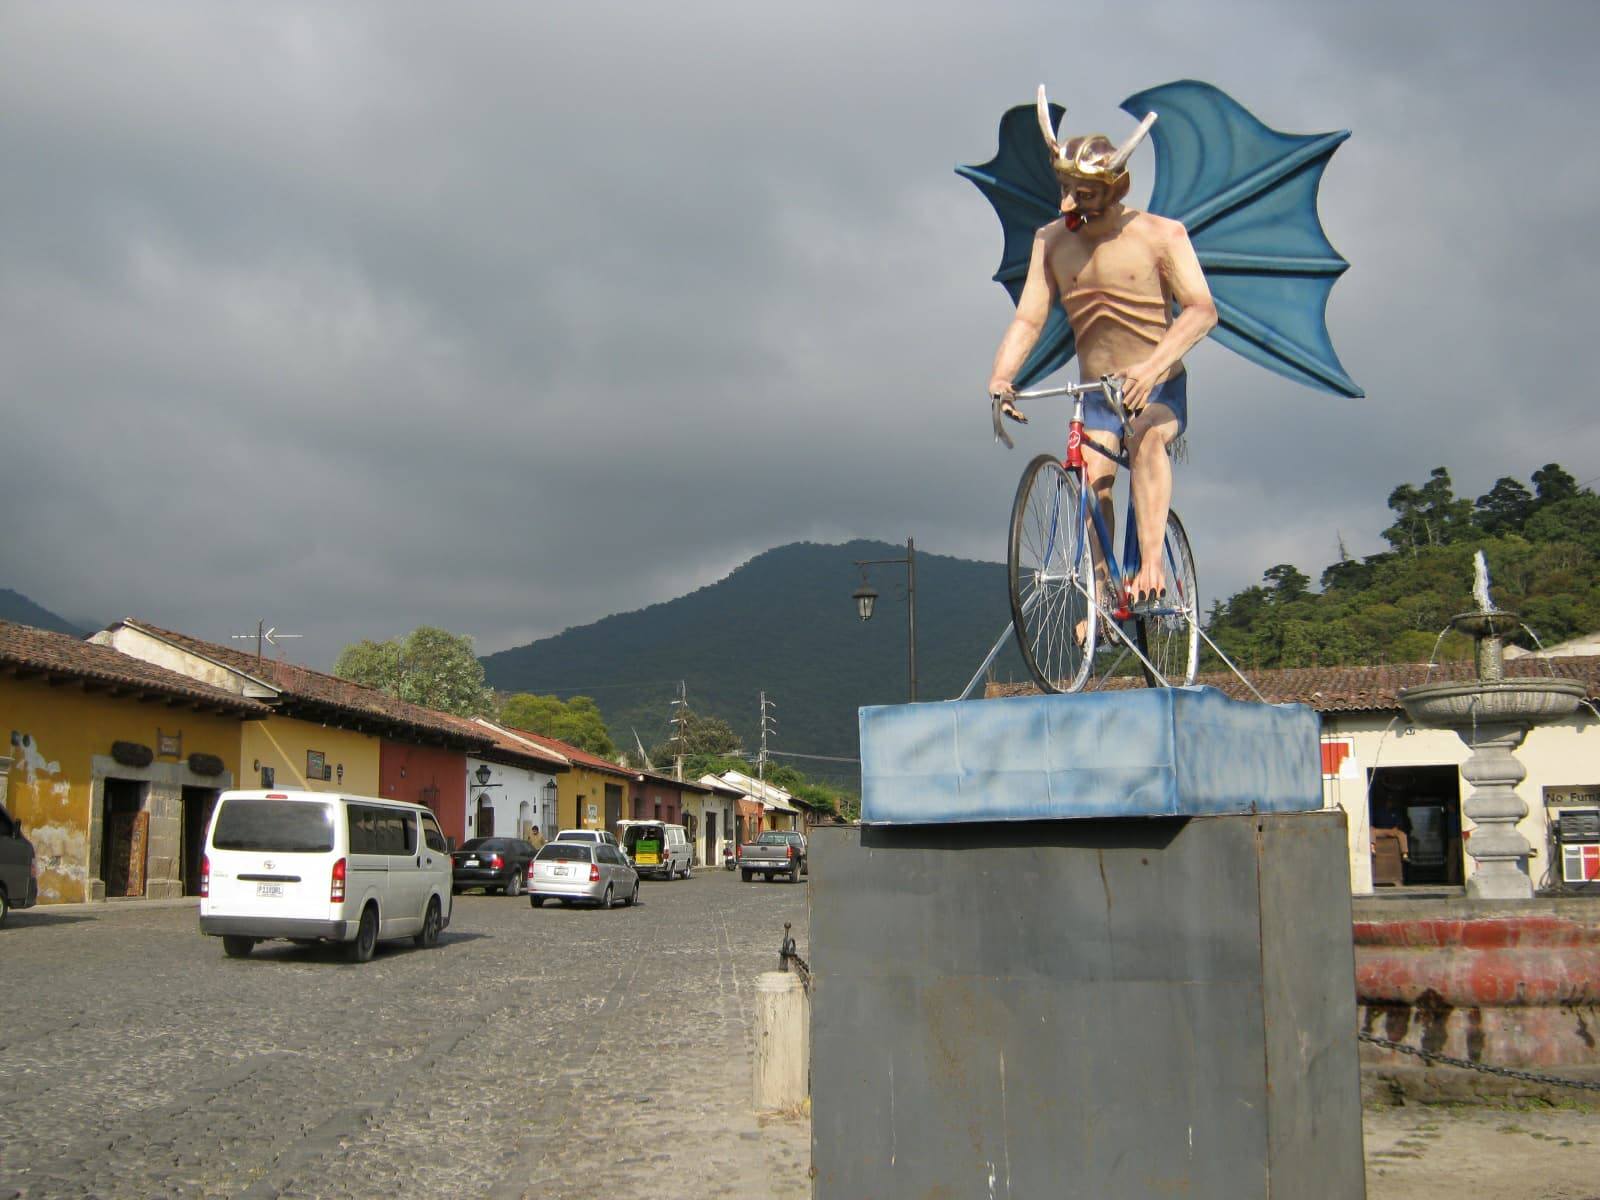 La Quema del Diablo en Guatemala: 5 datos sobre su origen